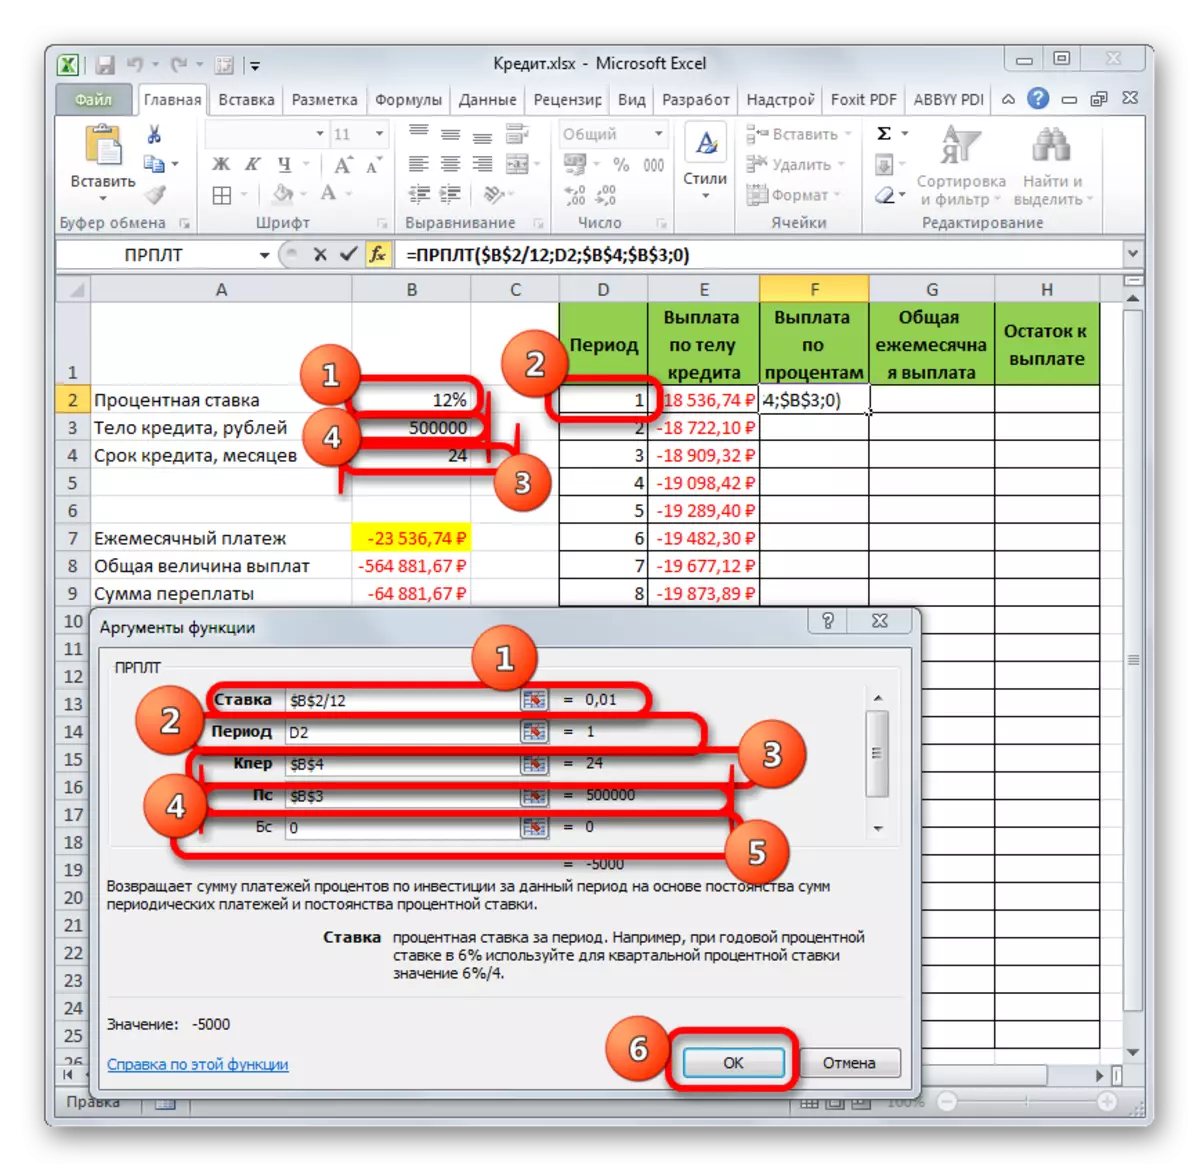 CPult-funkciaj argumentoj en Microsoft Excel